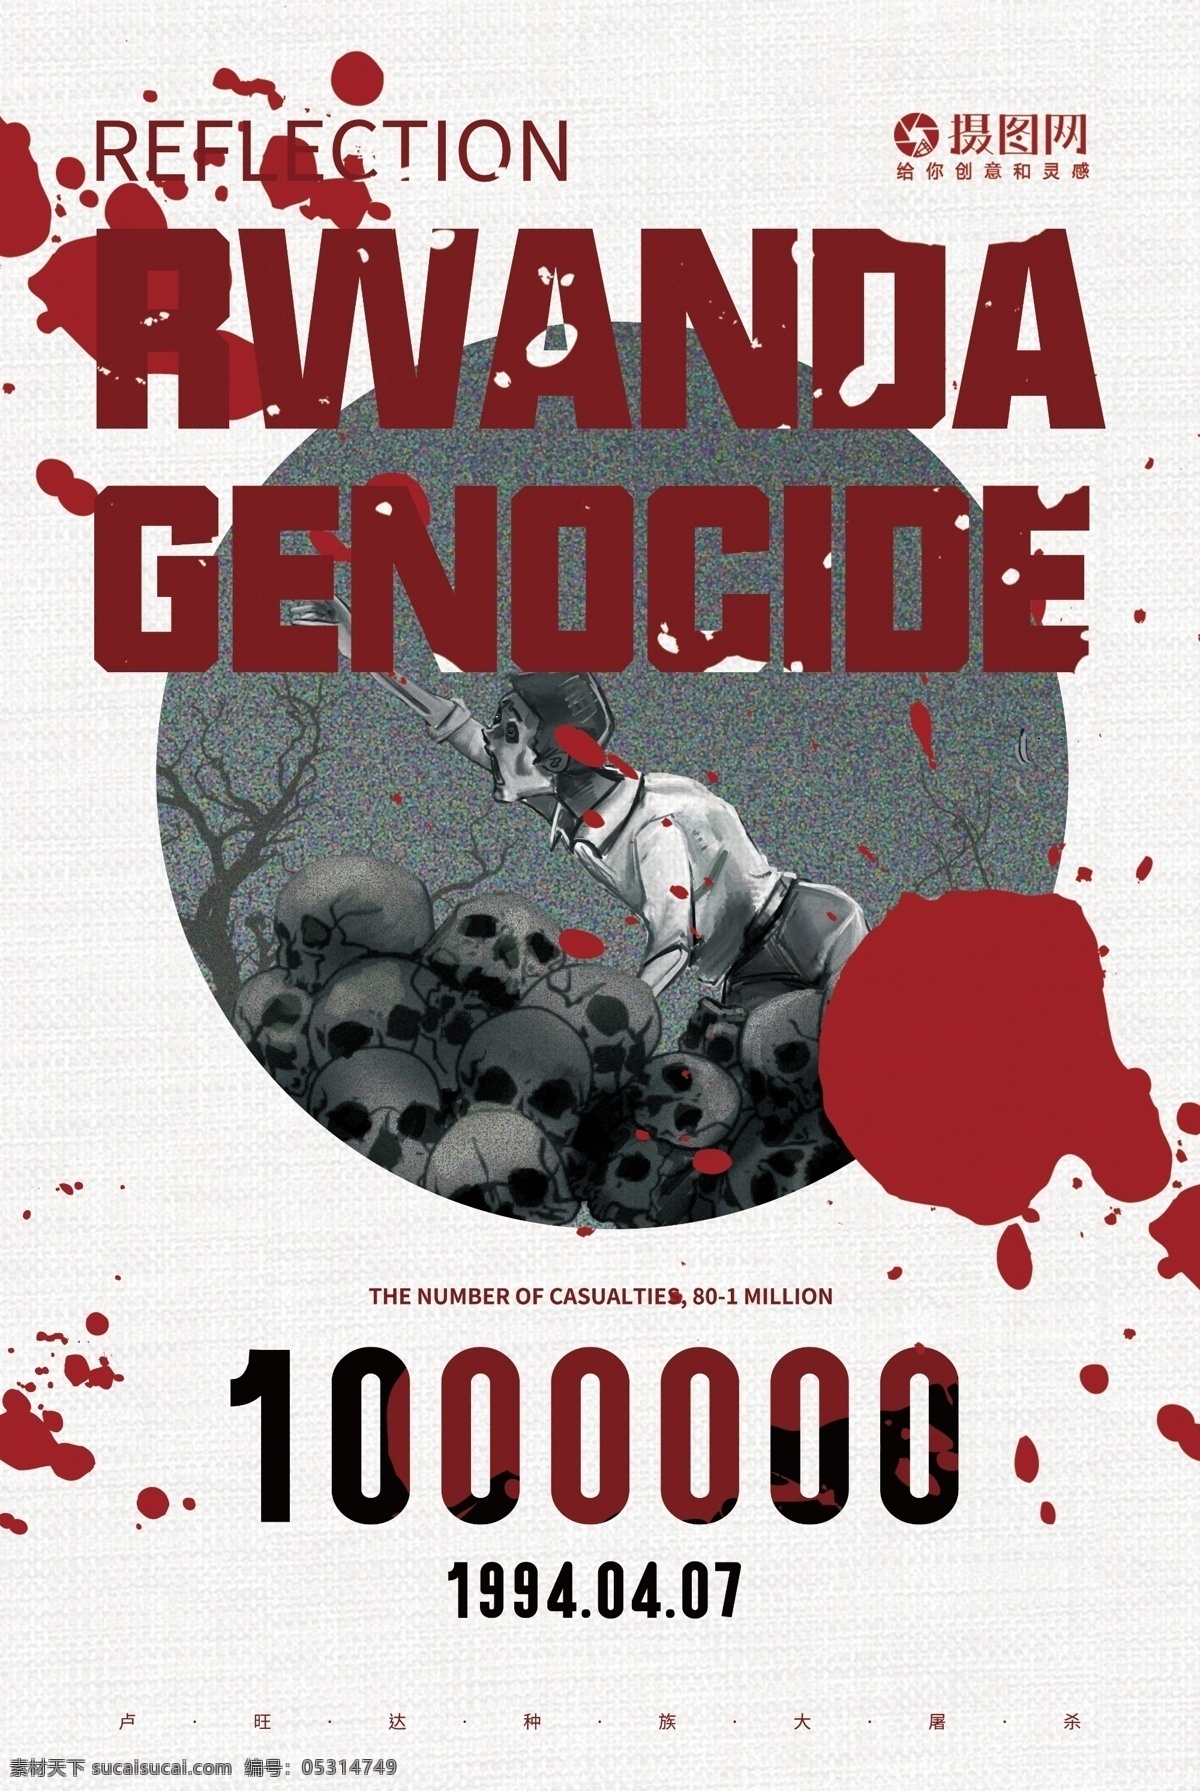 反思 卢旺达 大屠杀 国际 日 英文 海报 屠杀 种族灭绝 纯英文海报 英文海报 简约